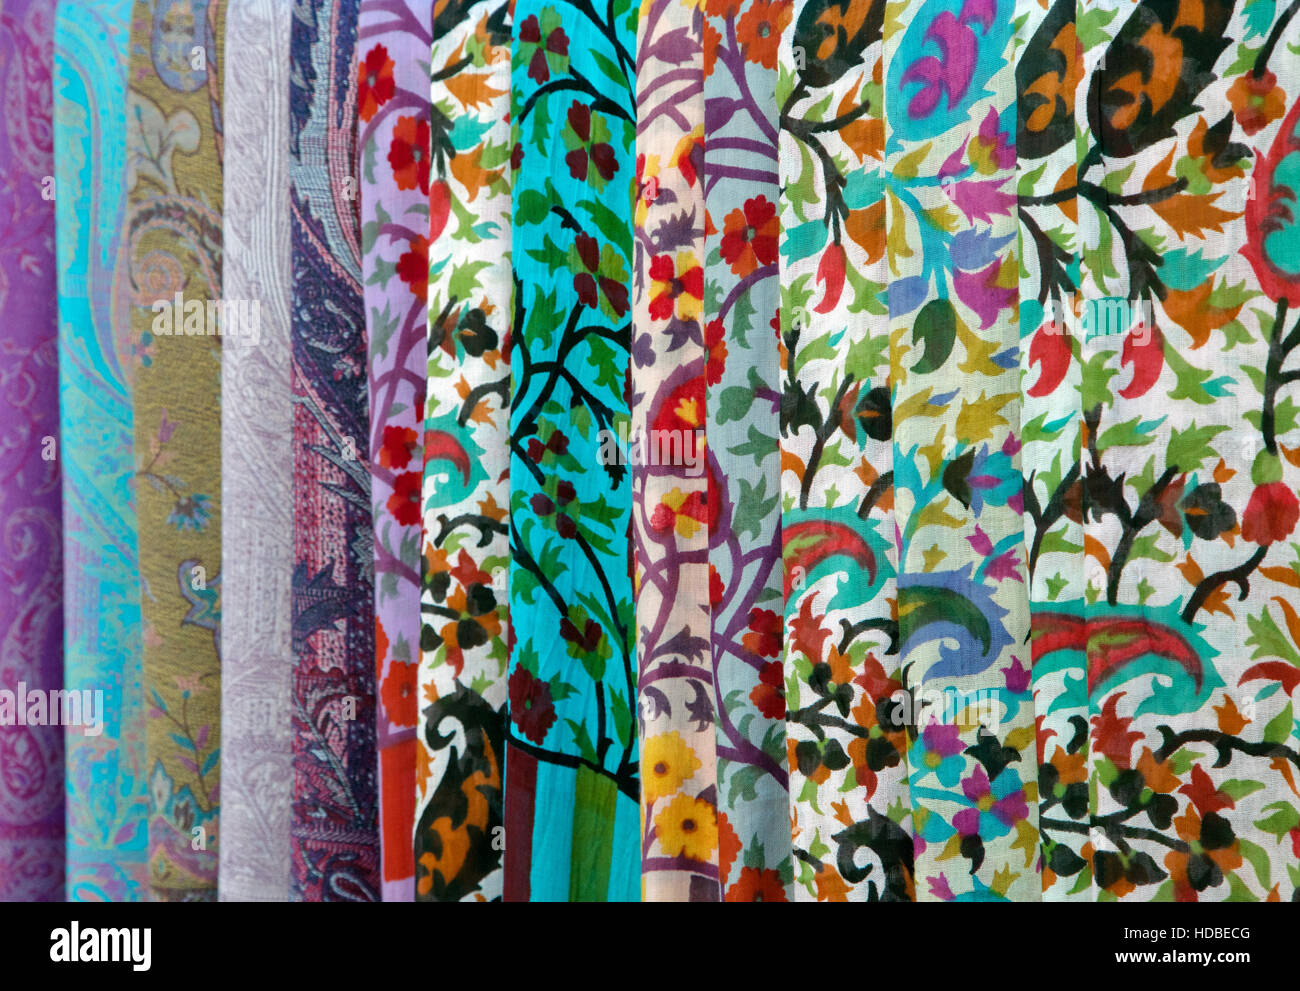 Colorate sciarpe su un oriental bazaar mercato di Khiva, Uzbekistan Foto Stock